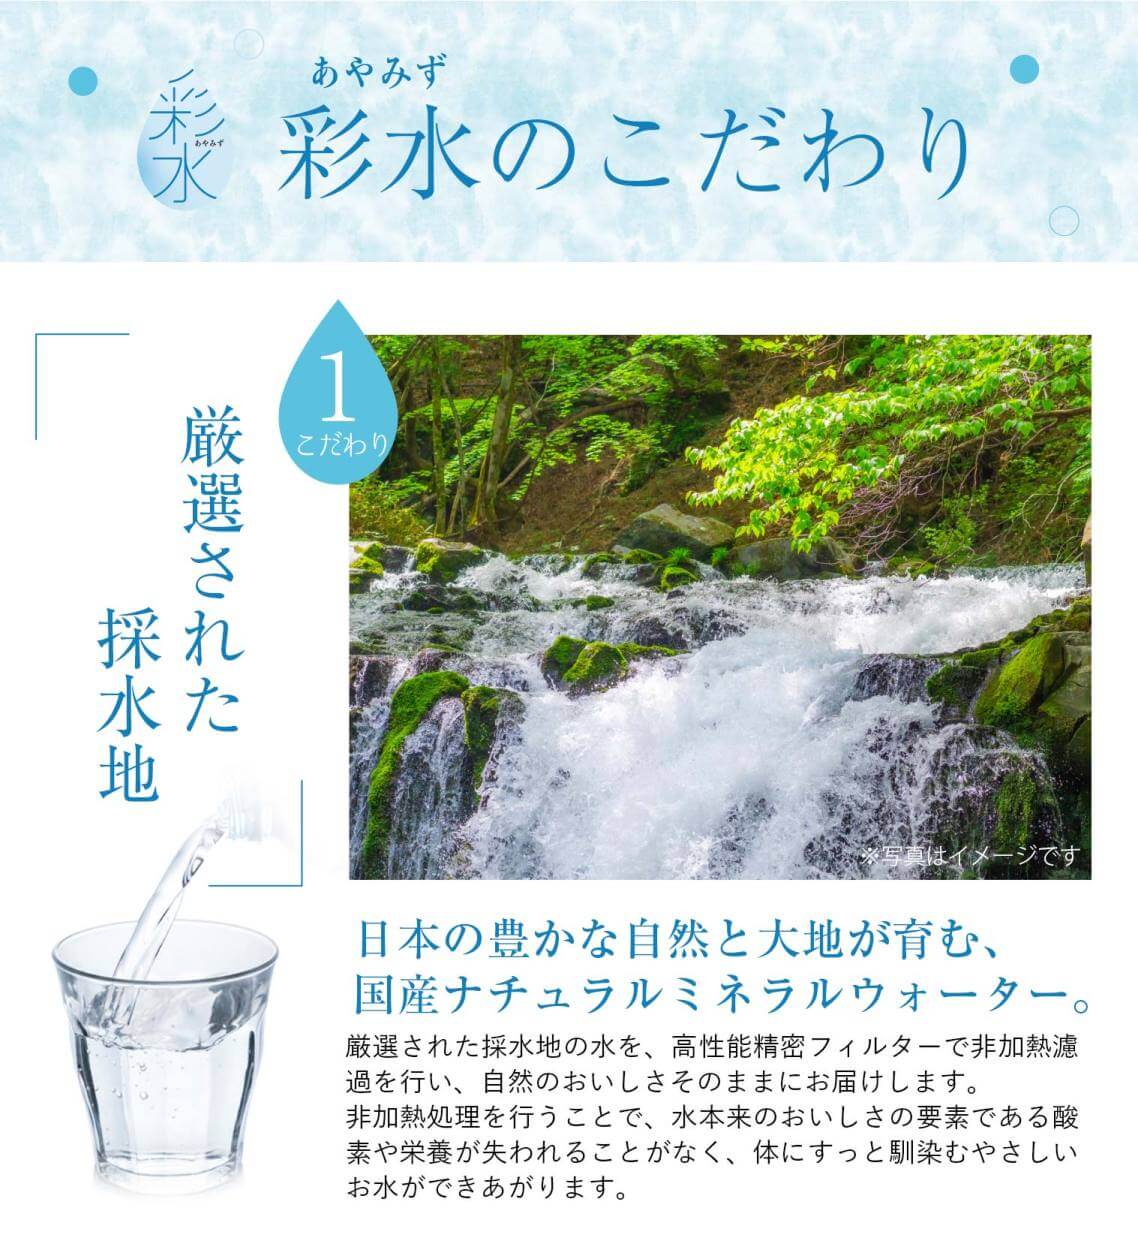 天然水「彩水」のこだわり①「厳選された採水地」日本の豊かな自然と大地が育む、国産ナチュラルミネラルウォーター。厳選された採水地の水を、高性能精密フィルターで非加熱濾過を行い、自然のおいしさそのままにお届けします。非加熱処理を行うことで、水本来のおいしさの要素である酸素や栄養が失われることがなく、体にすっと馴染むやさしいお水ができあがります。